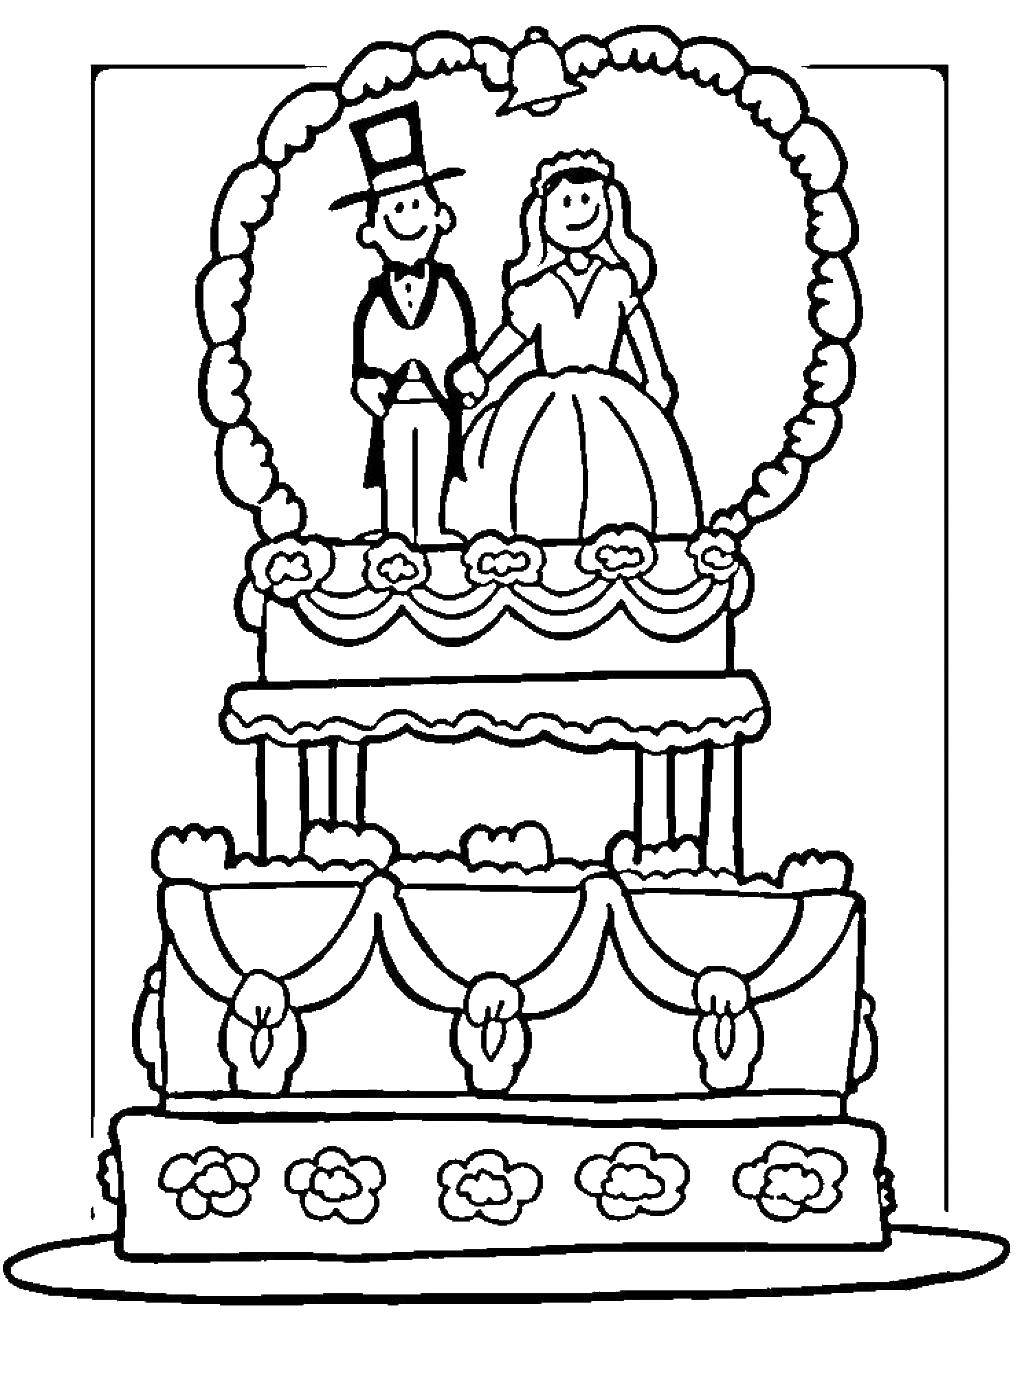 Розмальовки  Весільний торт з фігурками нареченого і нареченої. Завантажити розмальовку весілля, сукня, торт.  Роздрукувати ,Весілля,